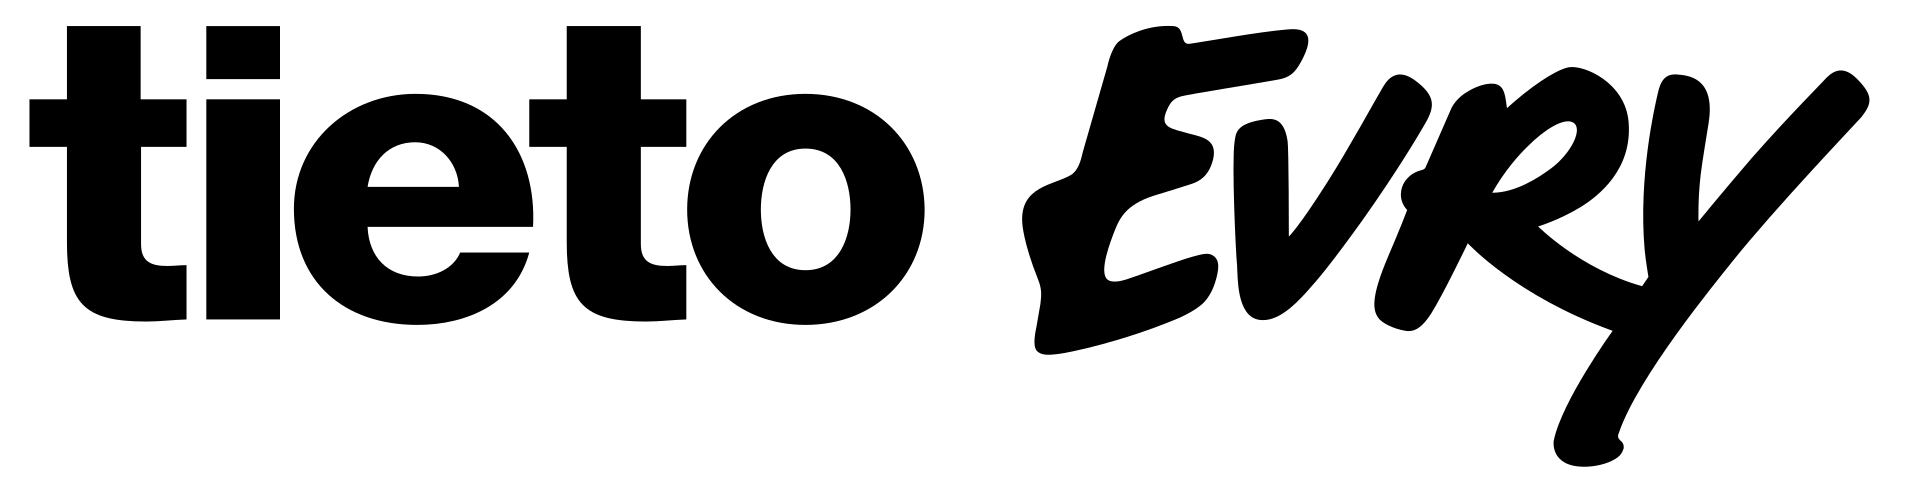 TietoEvry Brand Logo